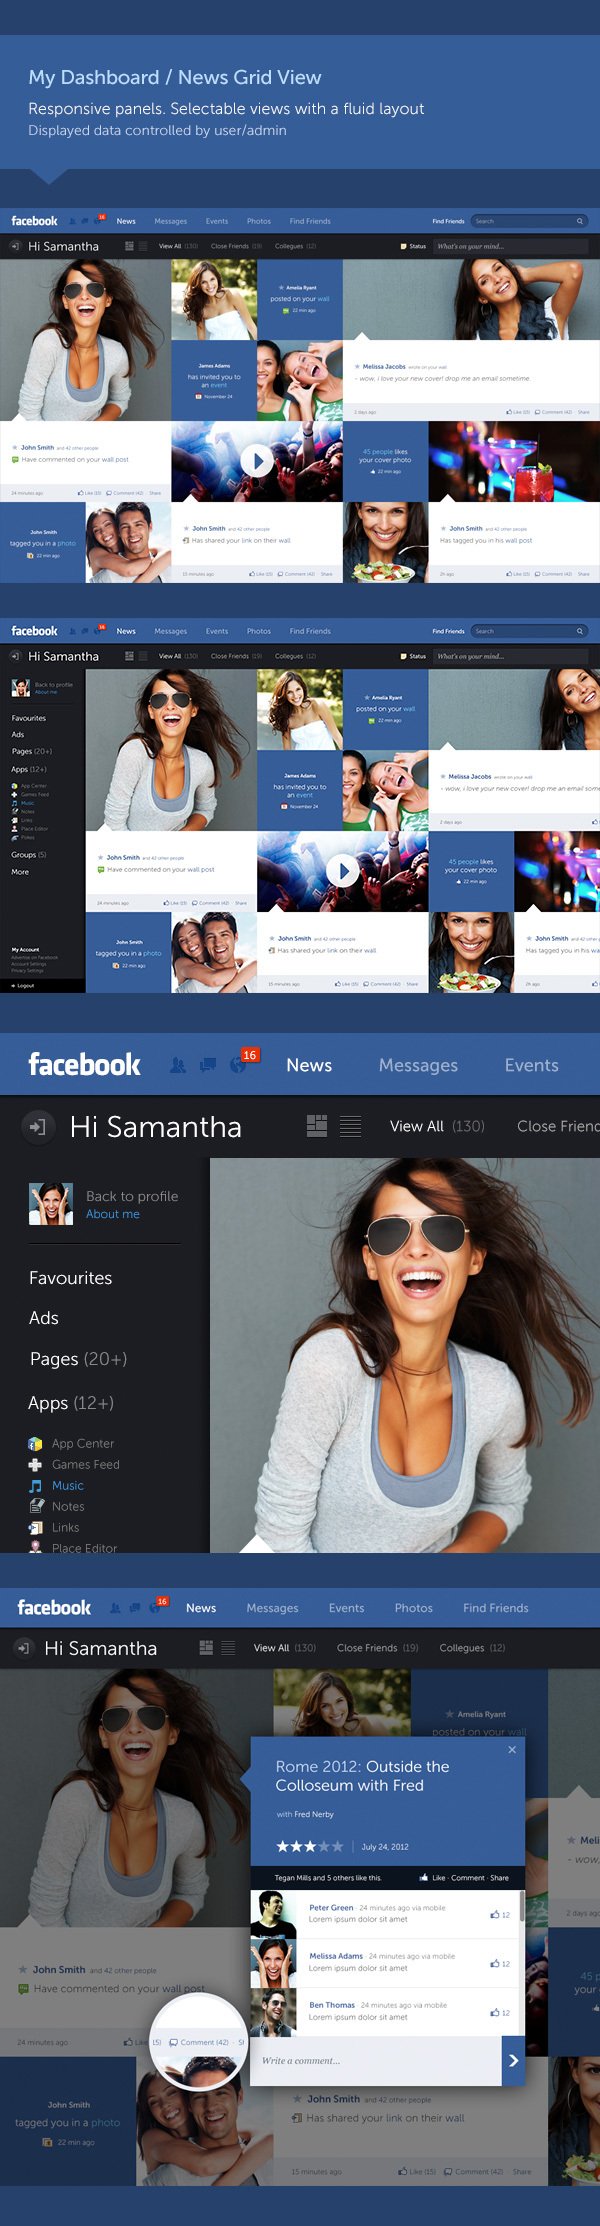 facebook-proposta-redesign-interface-02